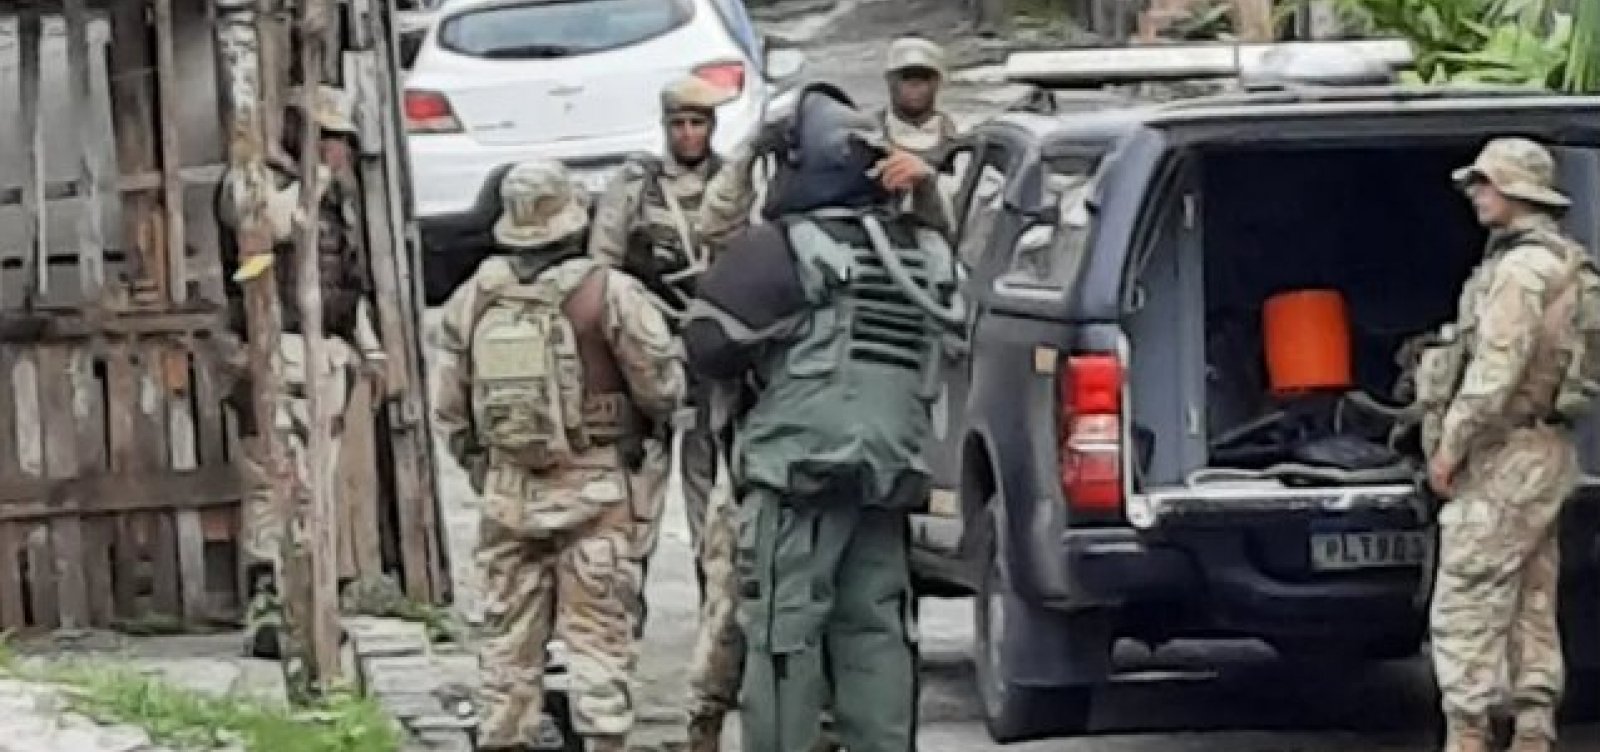 Policiais do Bope realizam explosão controlada de granada encontrada em Mirantes de Periperi